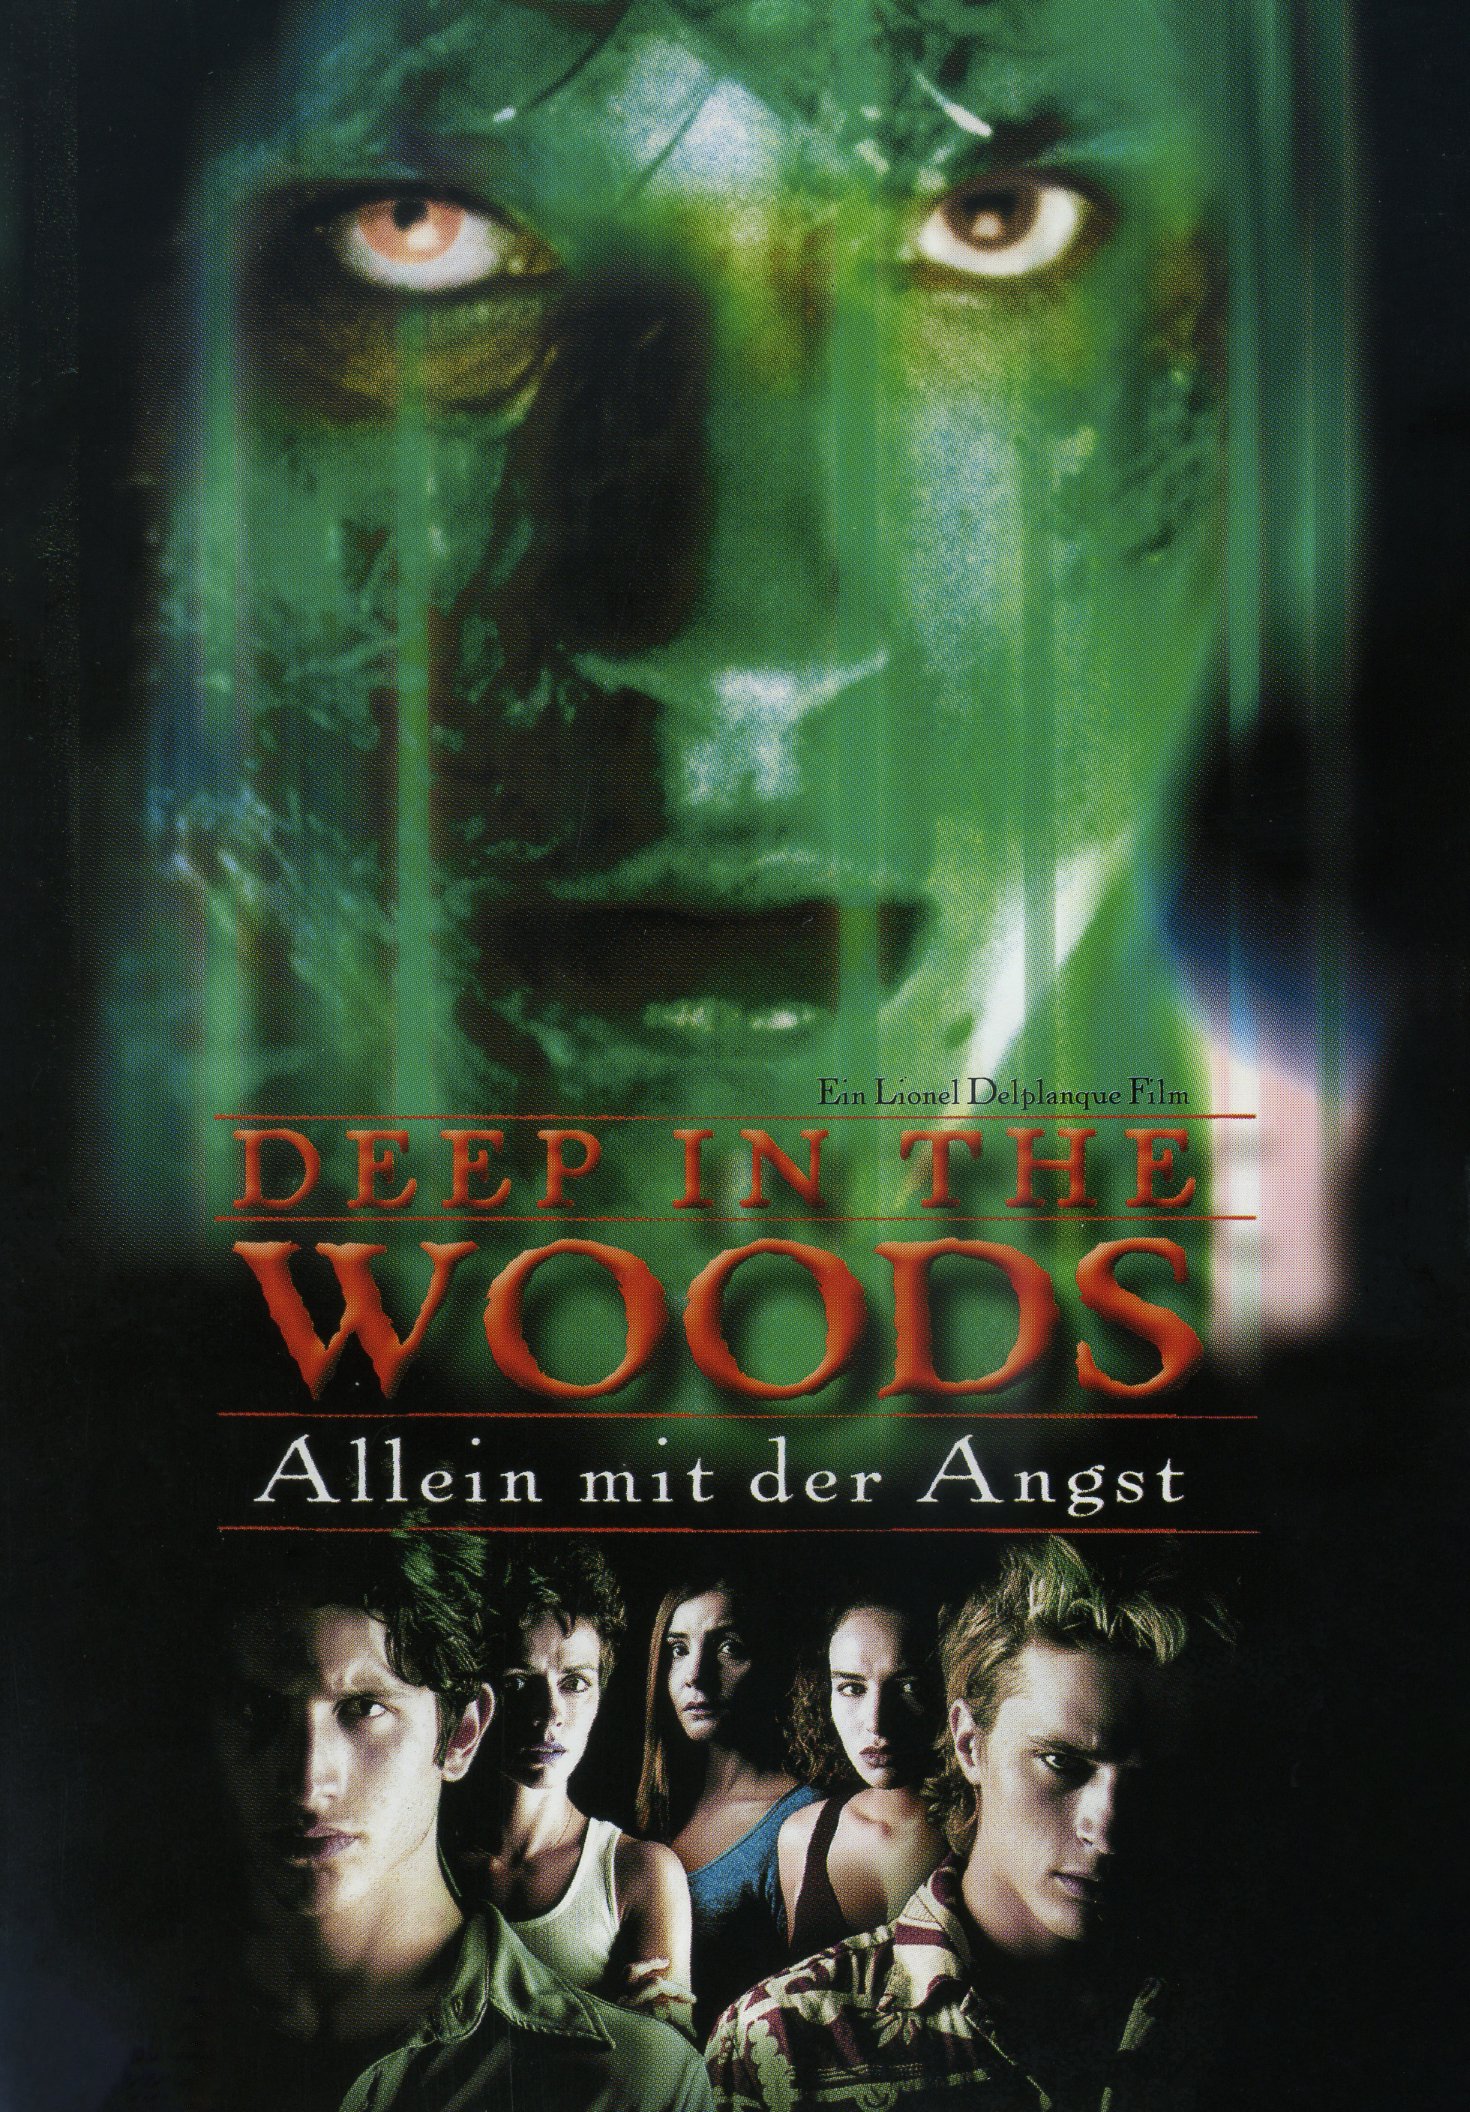 Plakat von "Deep in the woods - Allein mit der Angst"